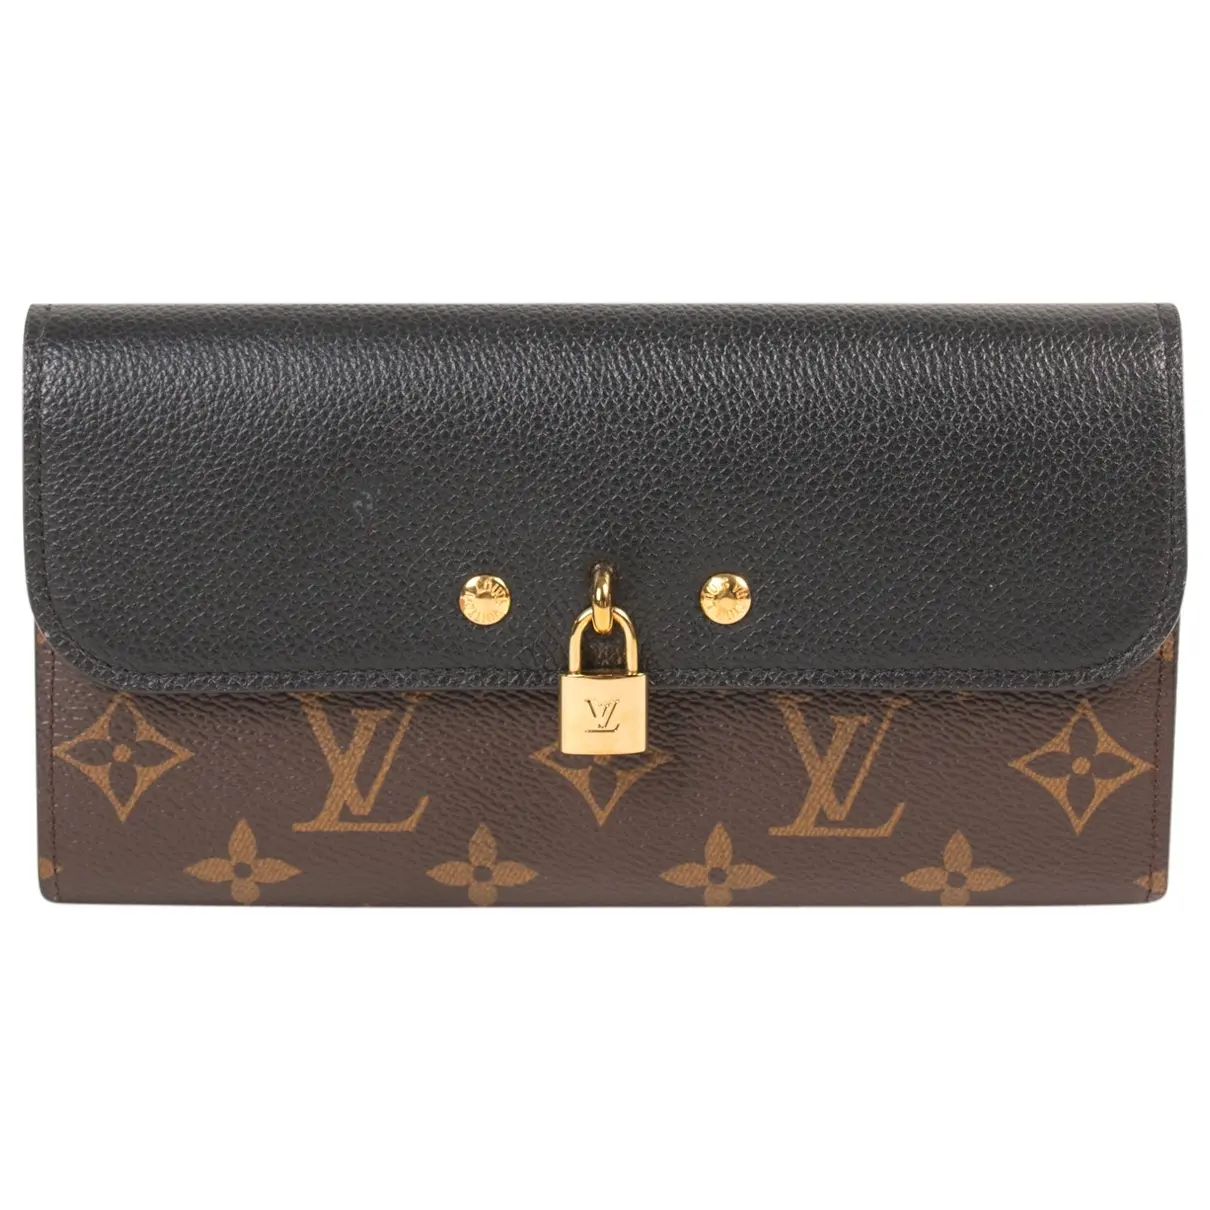 Vénus leather wallet Louis Vuitton